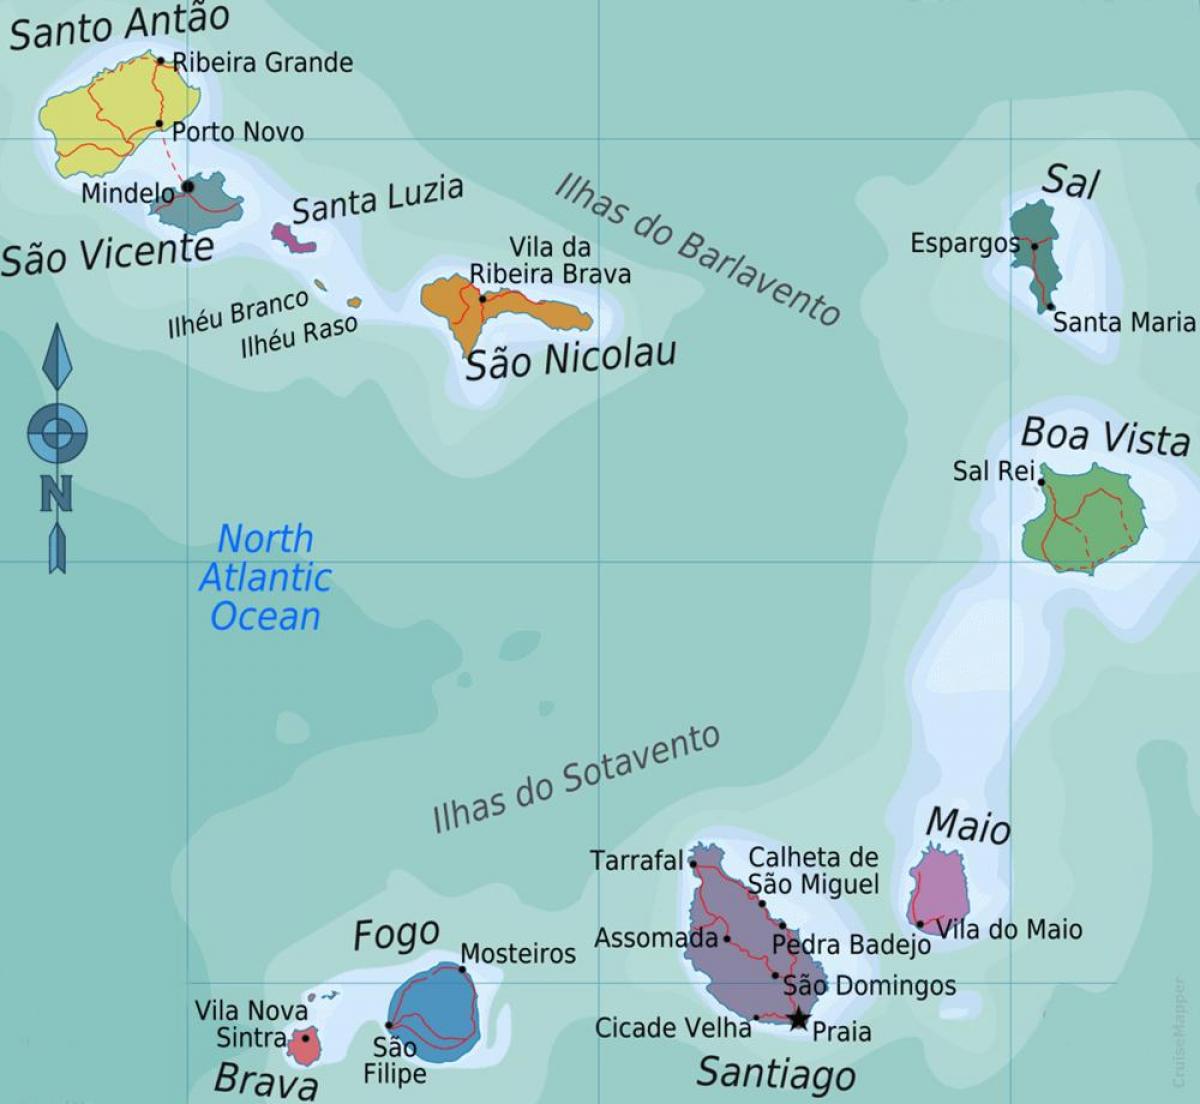 Kaapverdische eilanden locatie op de kaart